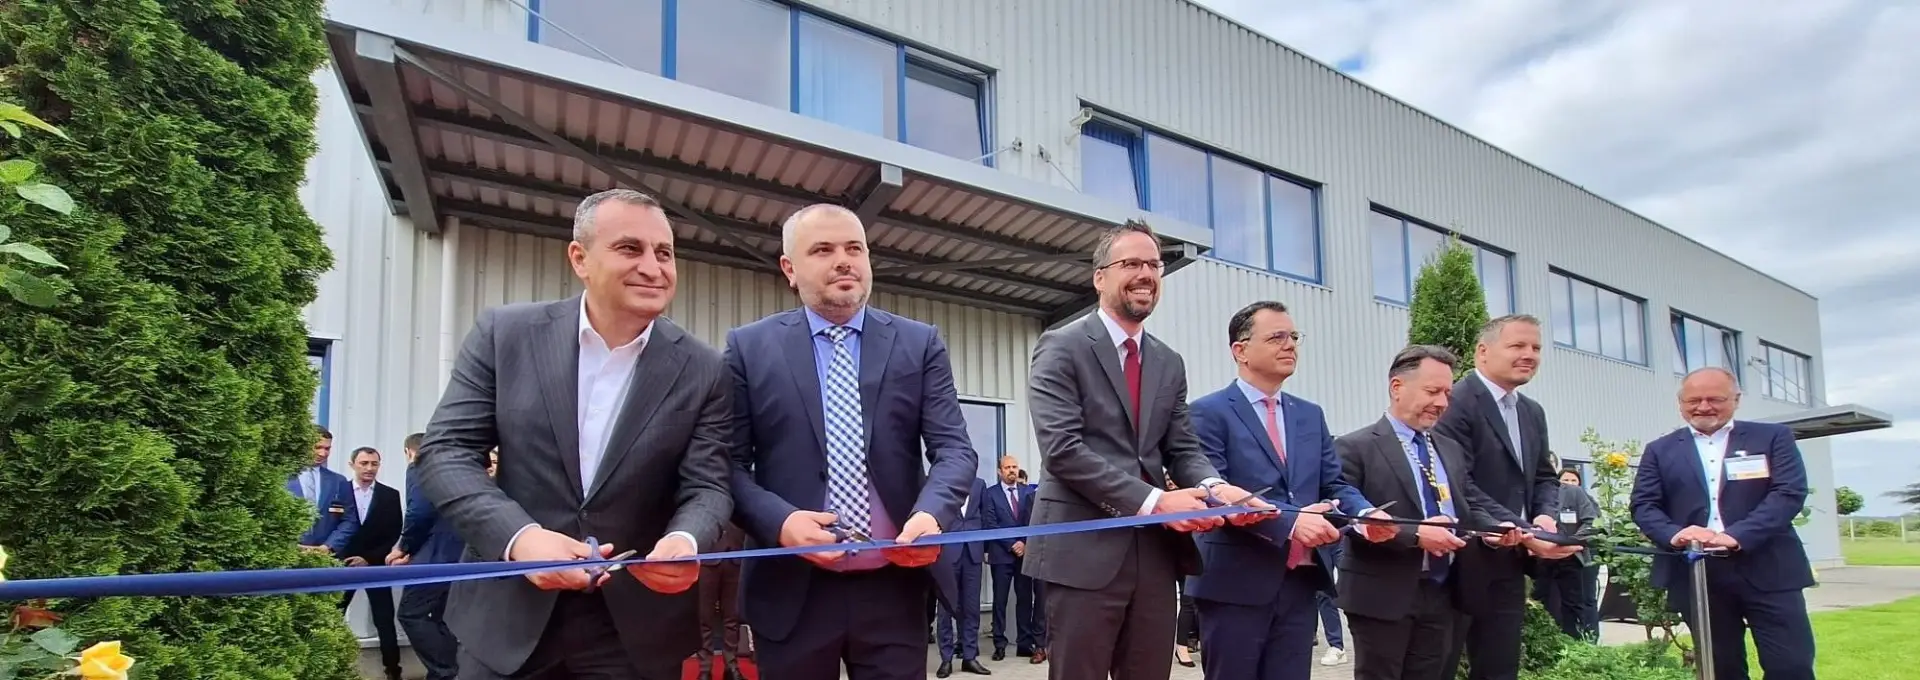 Foto FOTO. S-a inaugurat fabrica Hengst Filtration din Balș, lider mondial în producţia sistemelor de filtrare